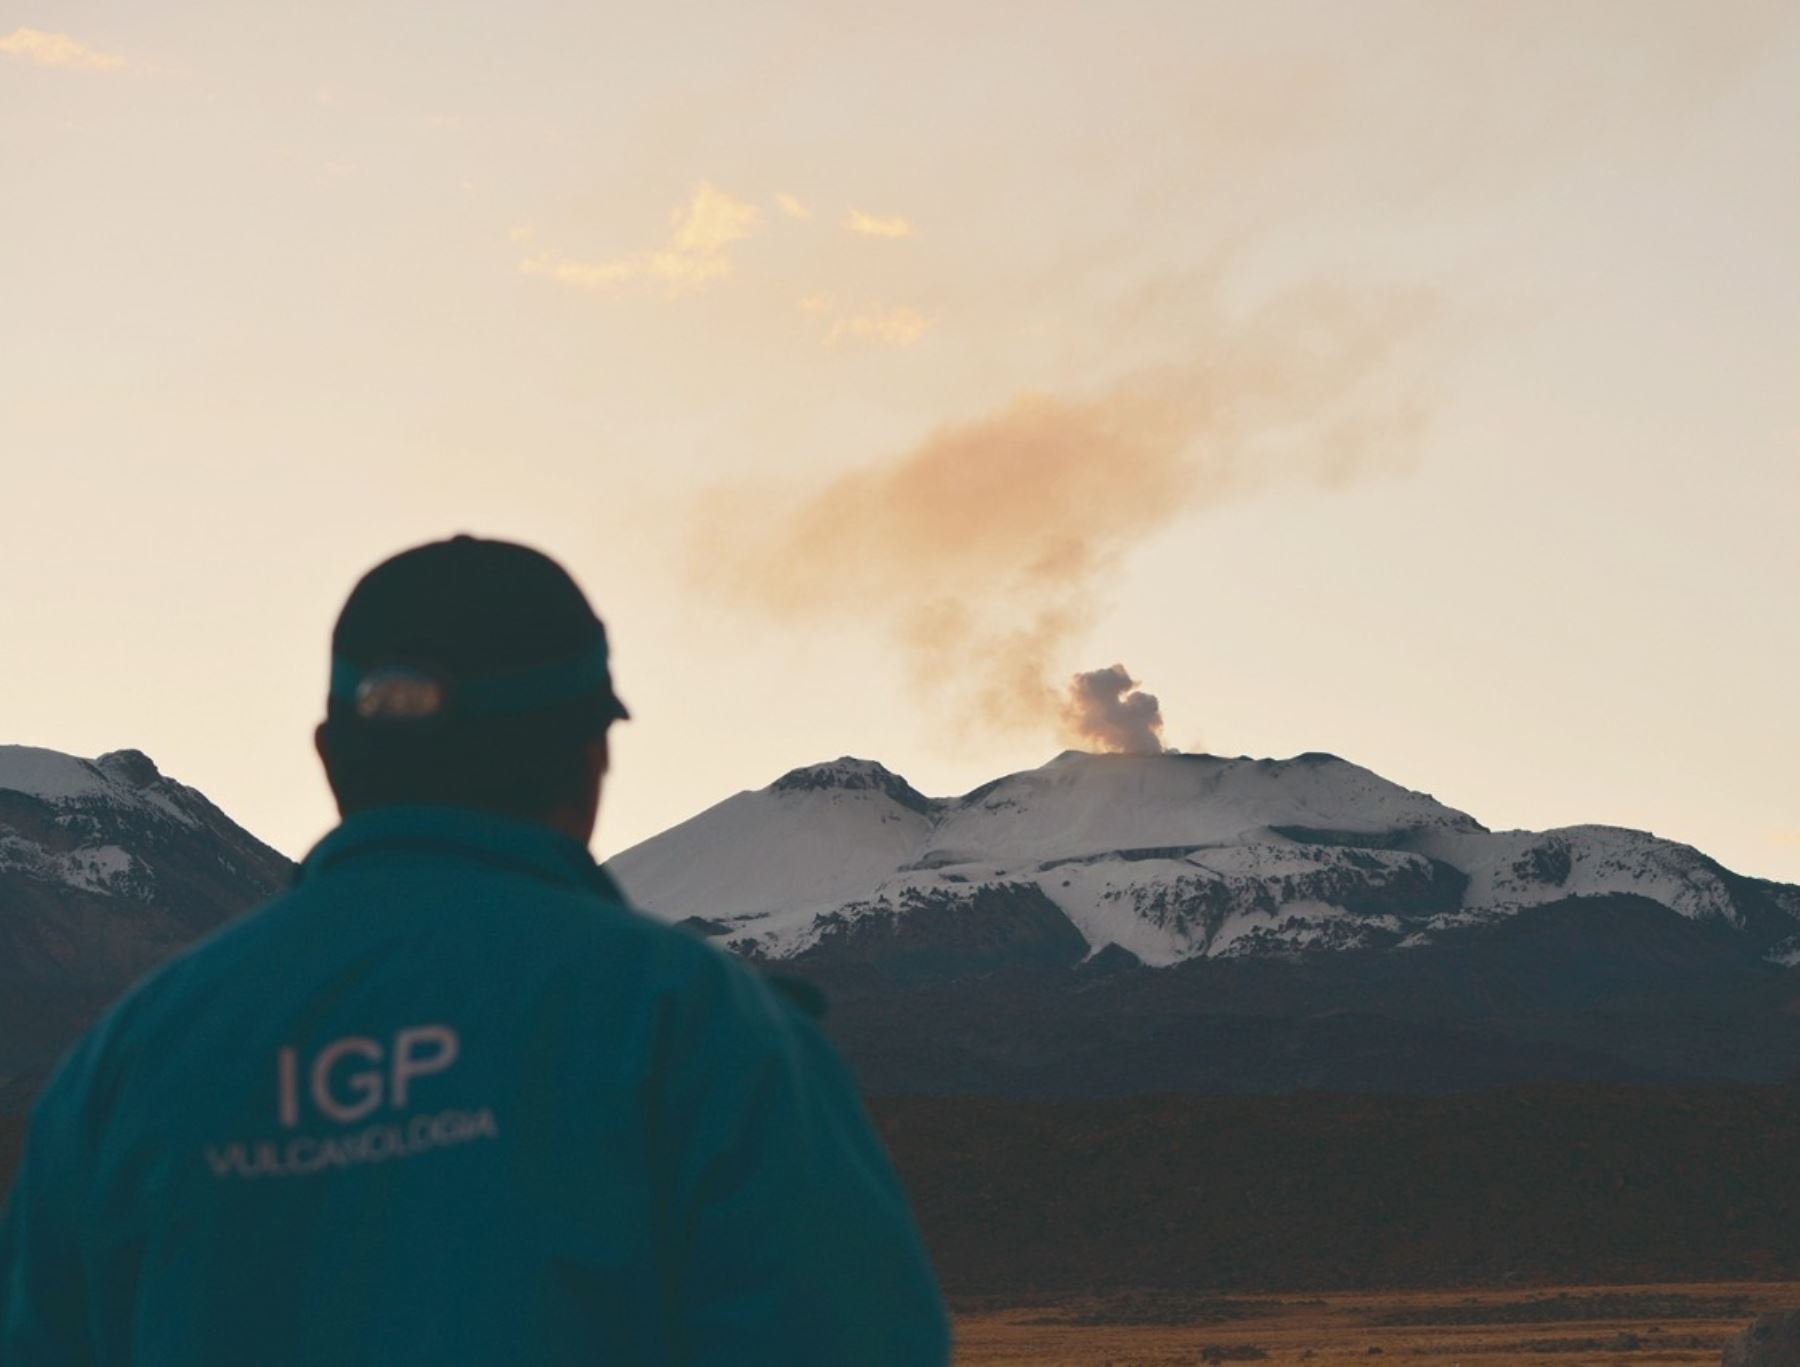 El Instituto Geofísico del Perú anunció que con nuevos equipos recientemente adquiridos estudiarán la composición de los gases que emiten los volcanes Sabancaya y Ubinas.